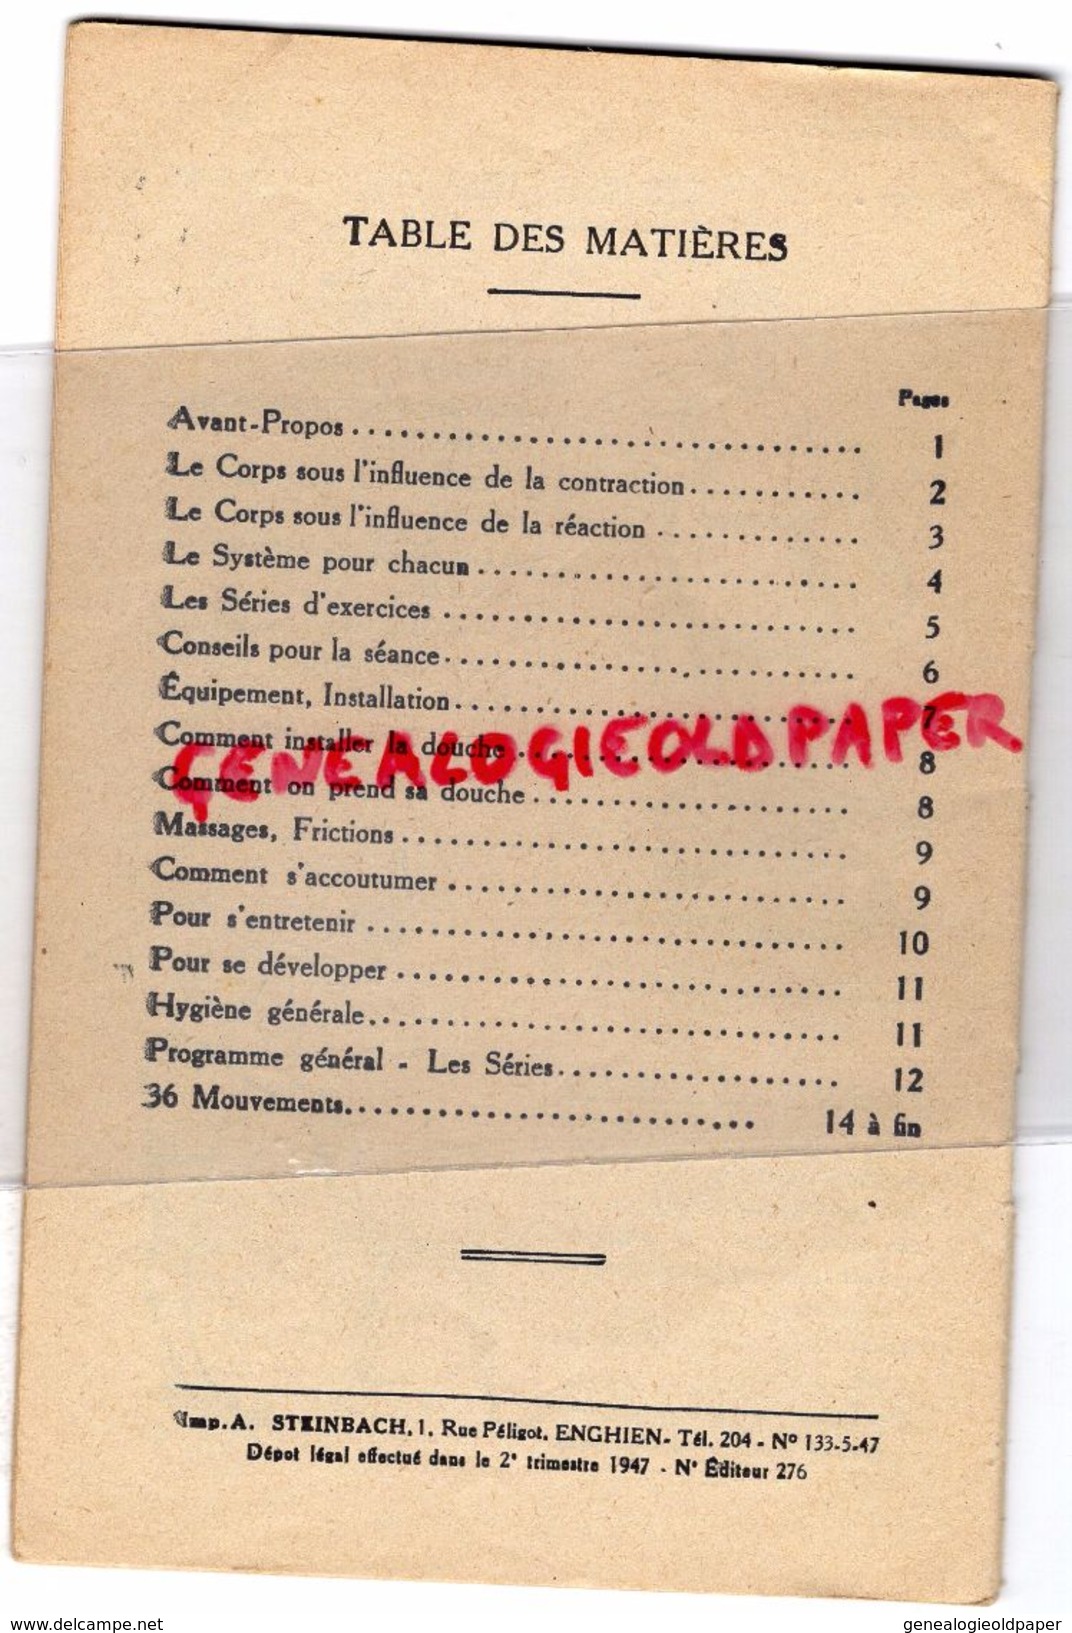 SPORT- CULTURE PHYSIQUE DE L' HOMME-CAPITAINE MAURICE CAMBIER-ILLUSTRATEUR ABEL PETIT-EDITEUR BORNEMANN PARIS-1947